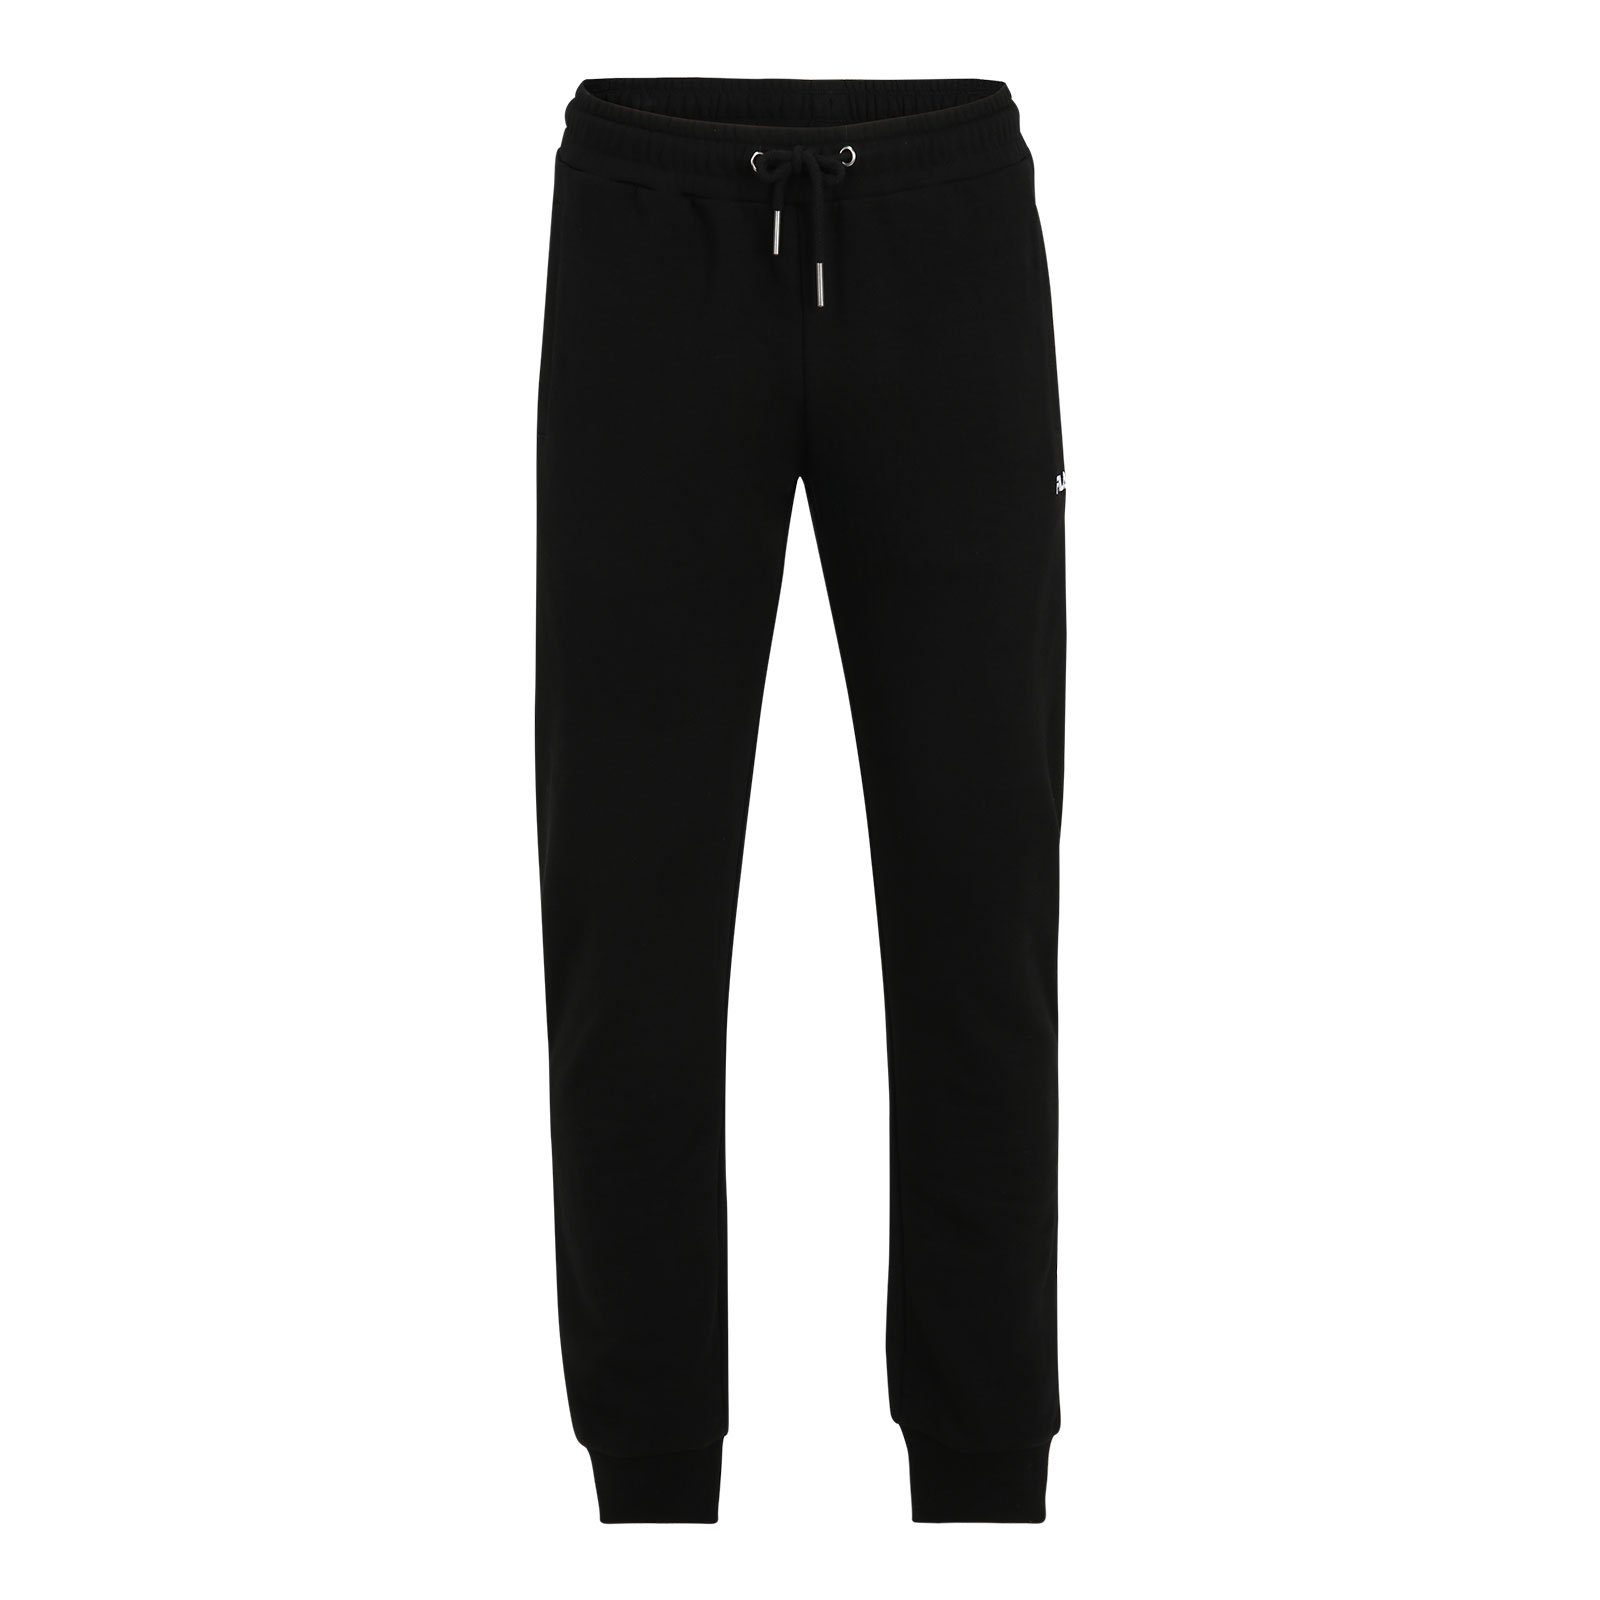 Fila Sweathose Braives Sweat Pants mit gesticktem Logo auf dem linken Oberschenkel 80010 black